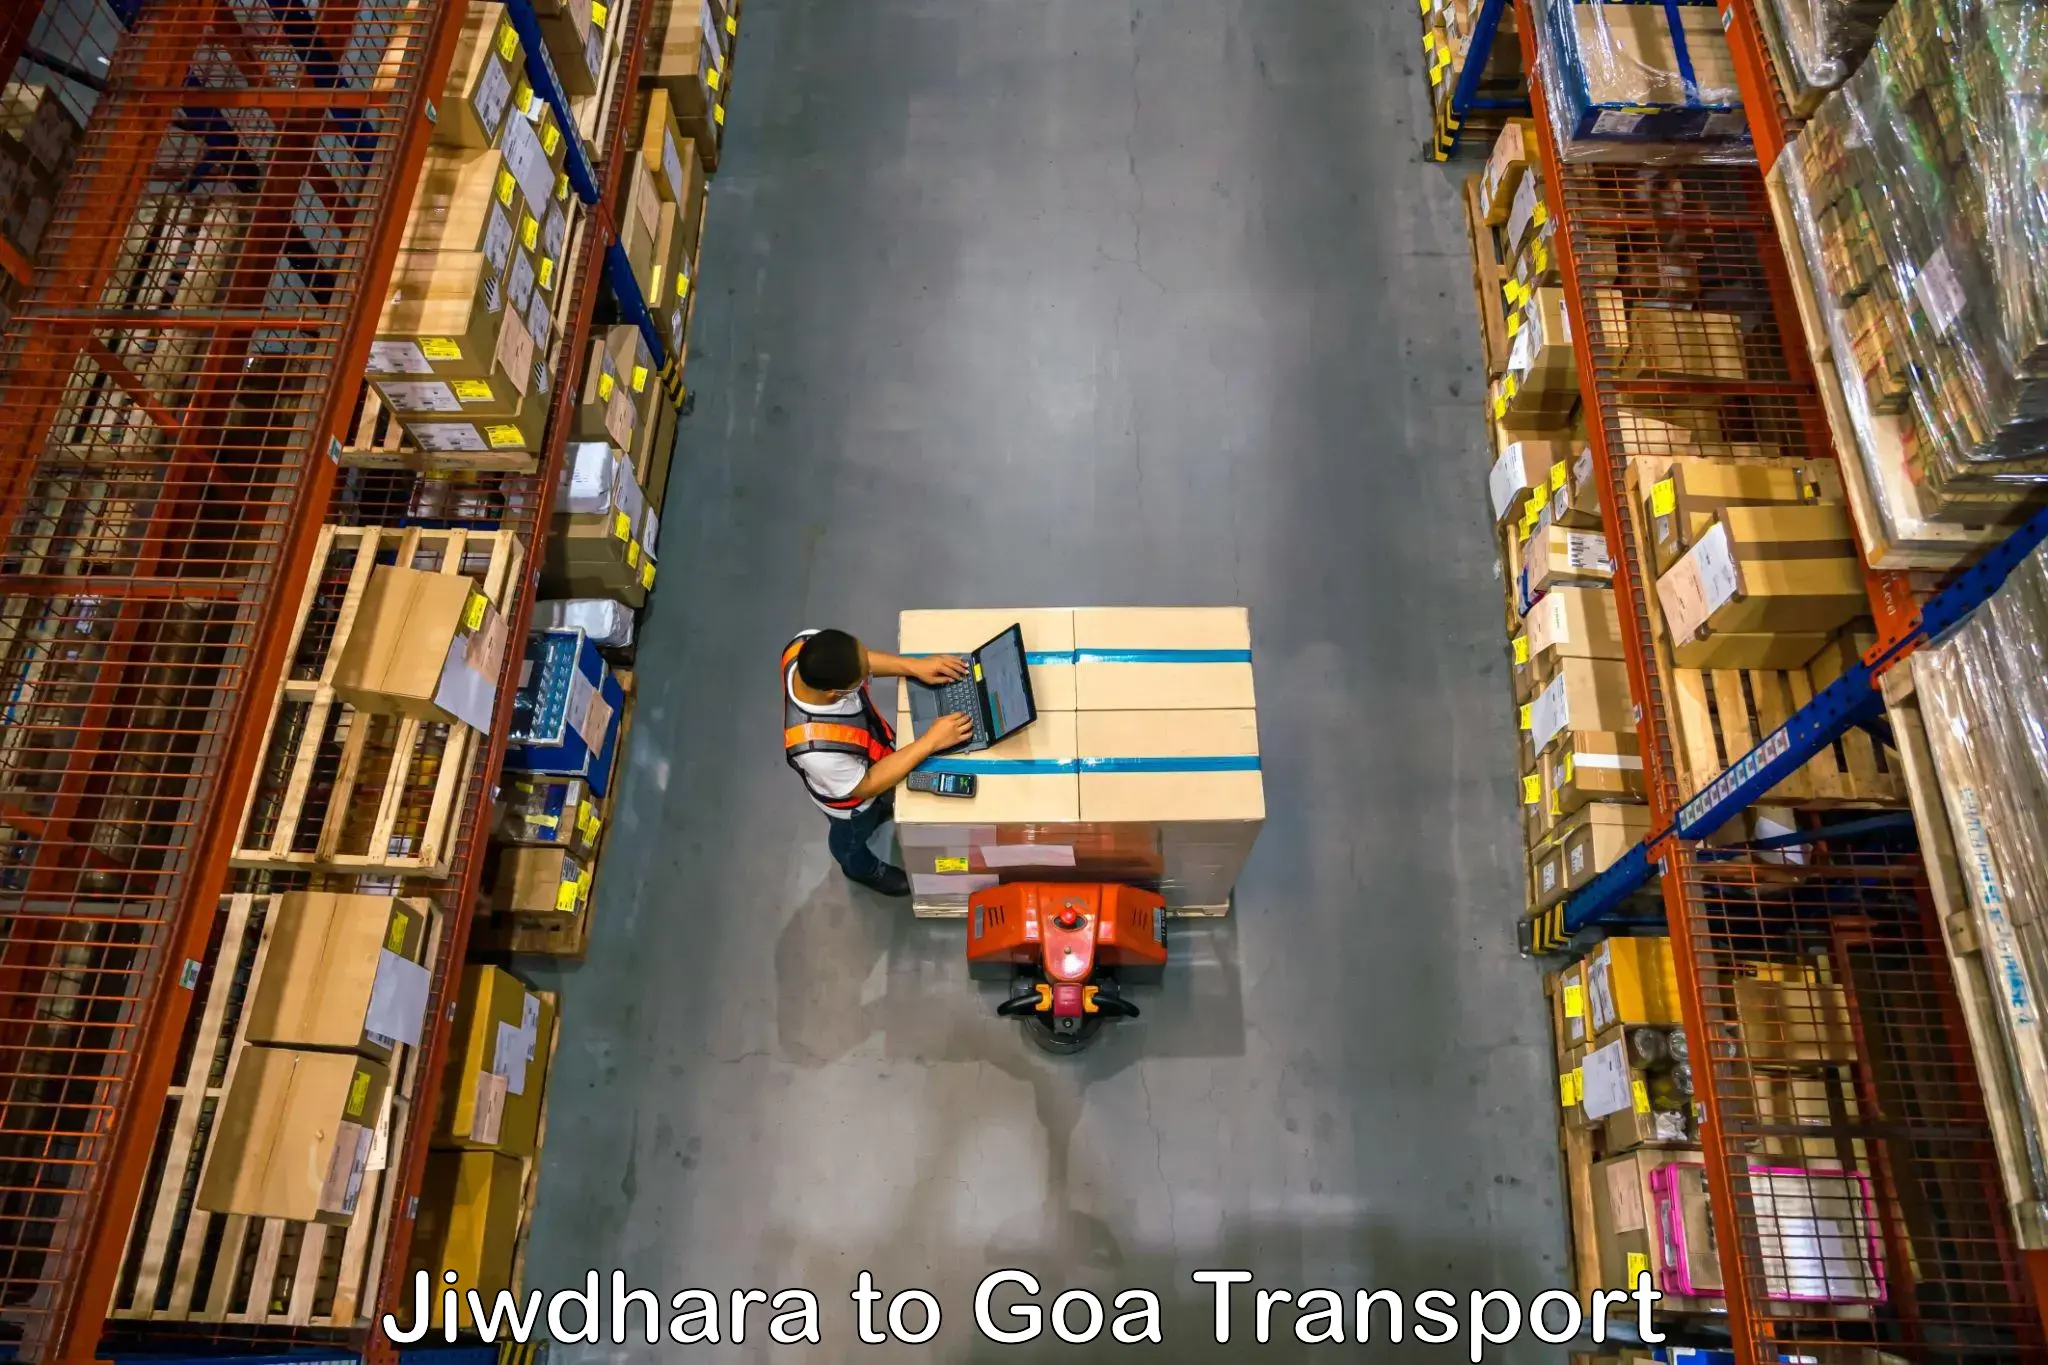 Intercity goods transport in Jiwdhara to Bicholim